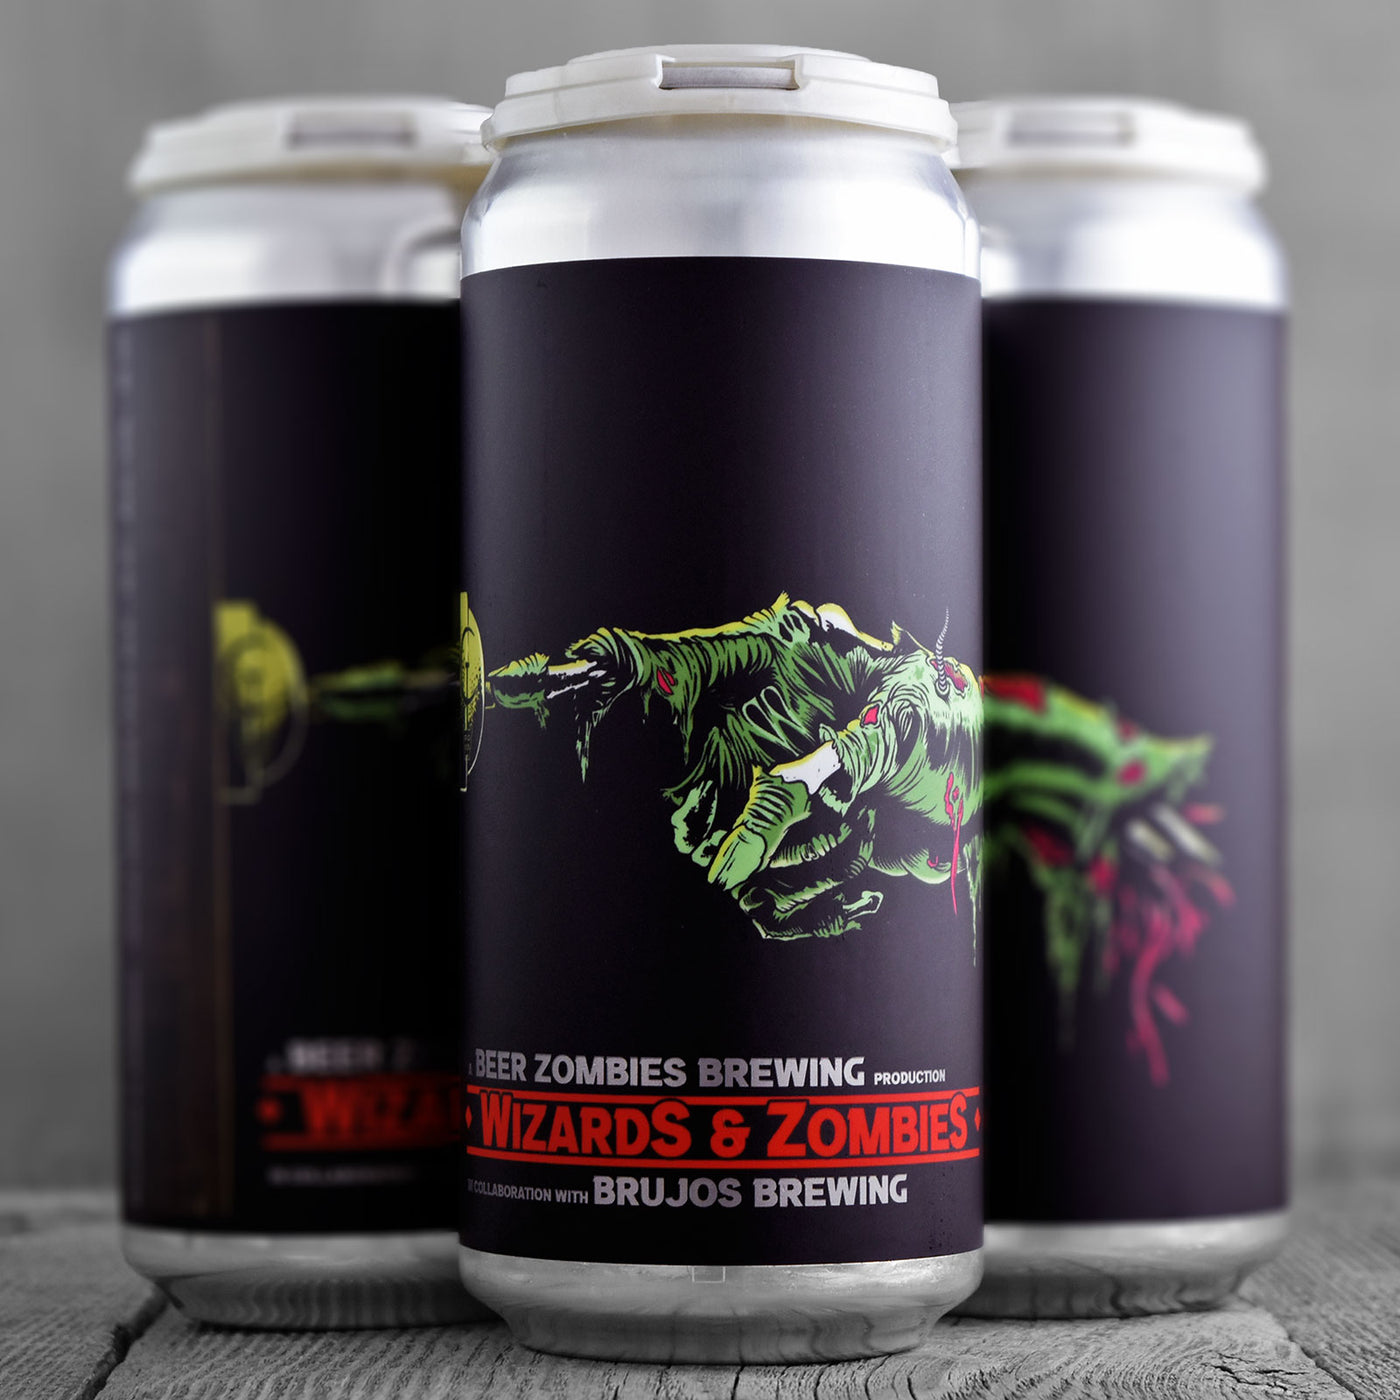 Beer Zombies / Brujos - Wizards & Zombies